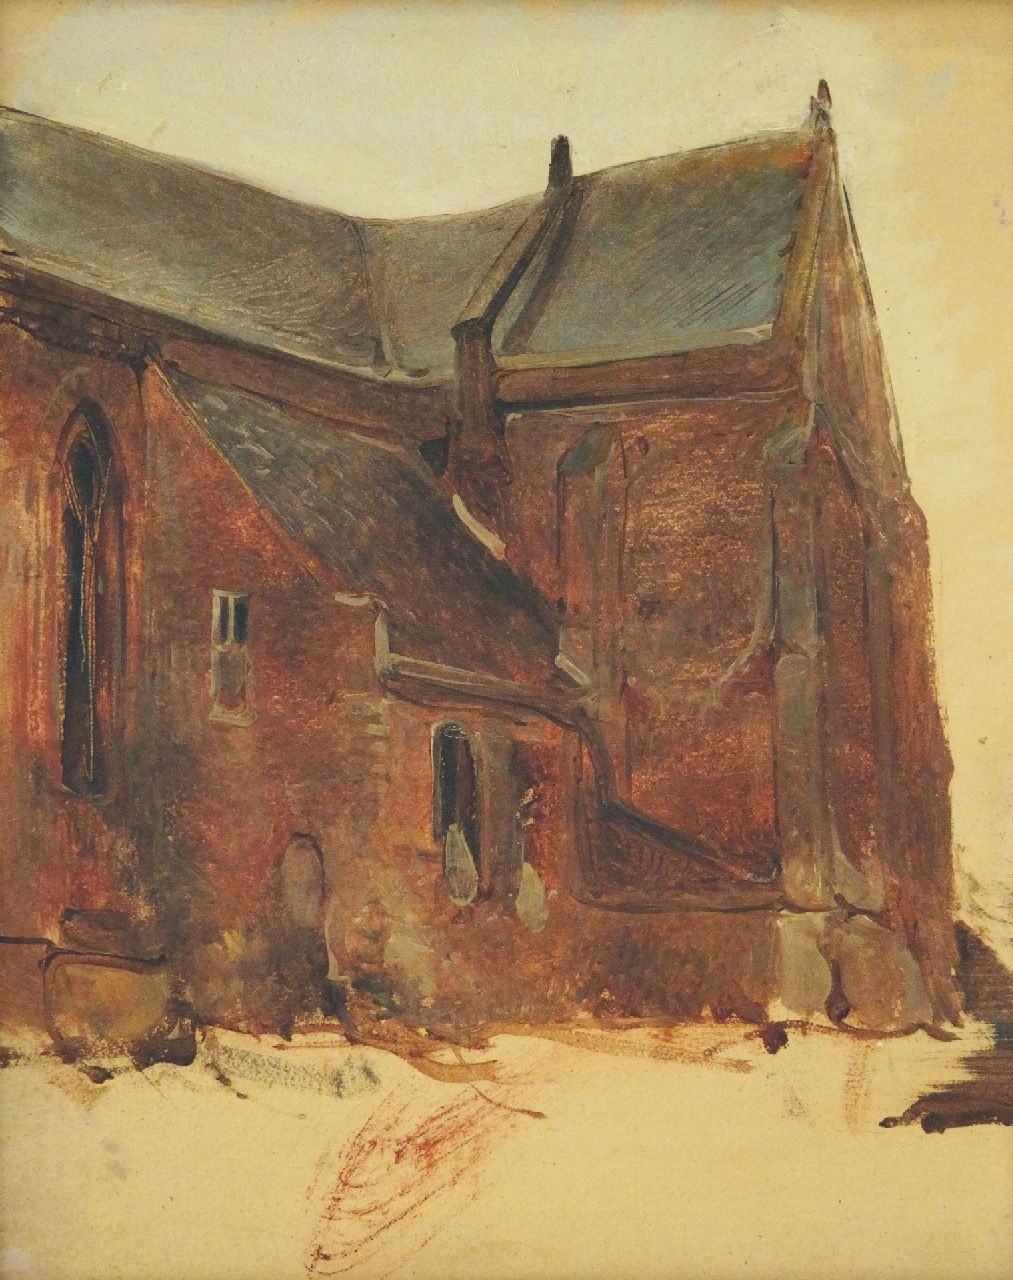 Bosboom J.  | Johannes Bosboom | Schilderijen te koop aangeboden | Exterieurschets van een kerk, olieverf op paneel 30,7 x 25,2 cm